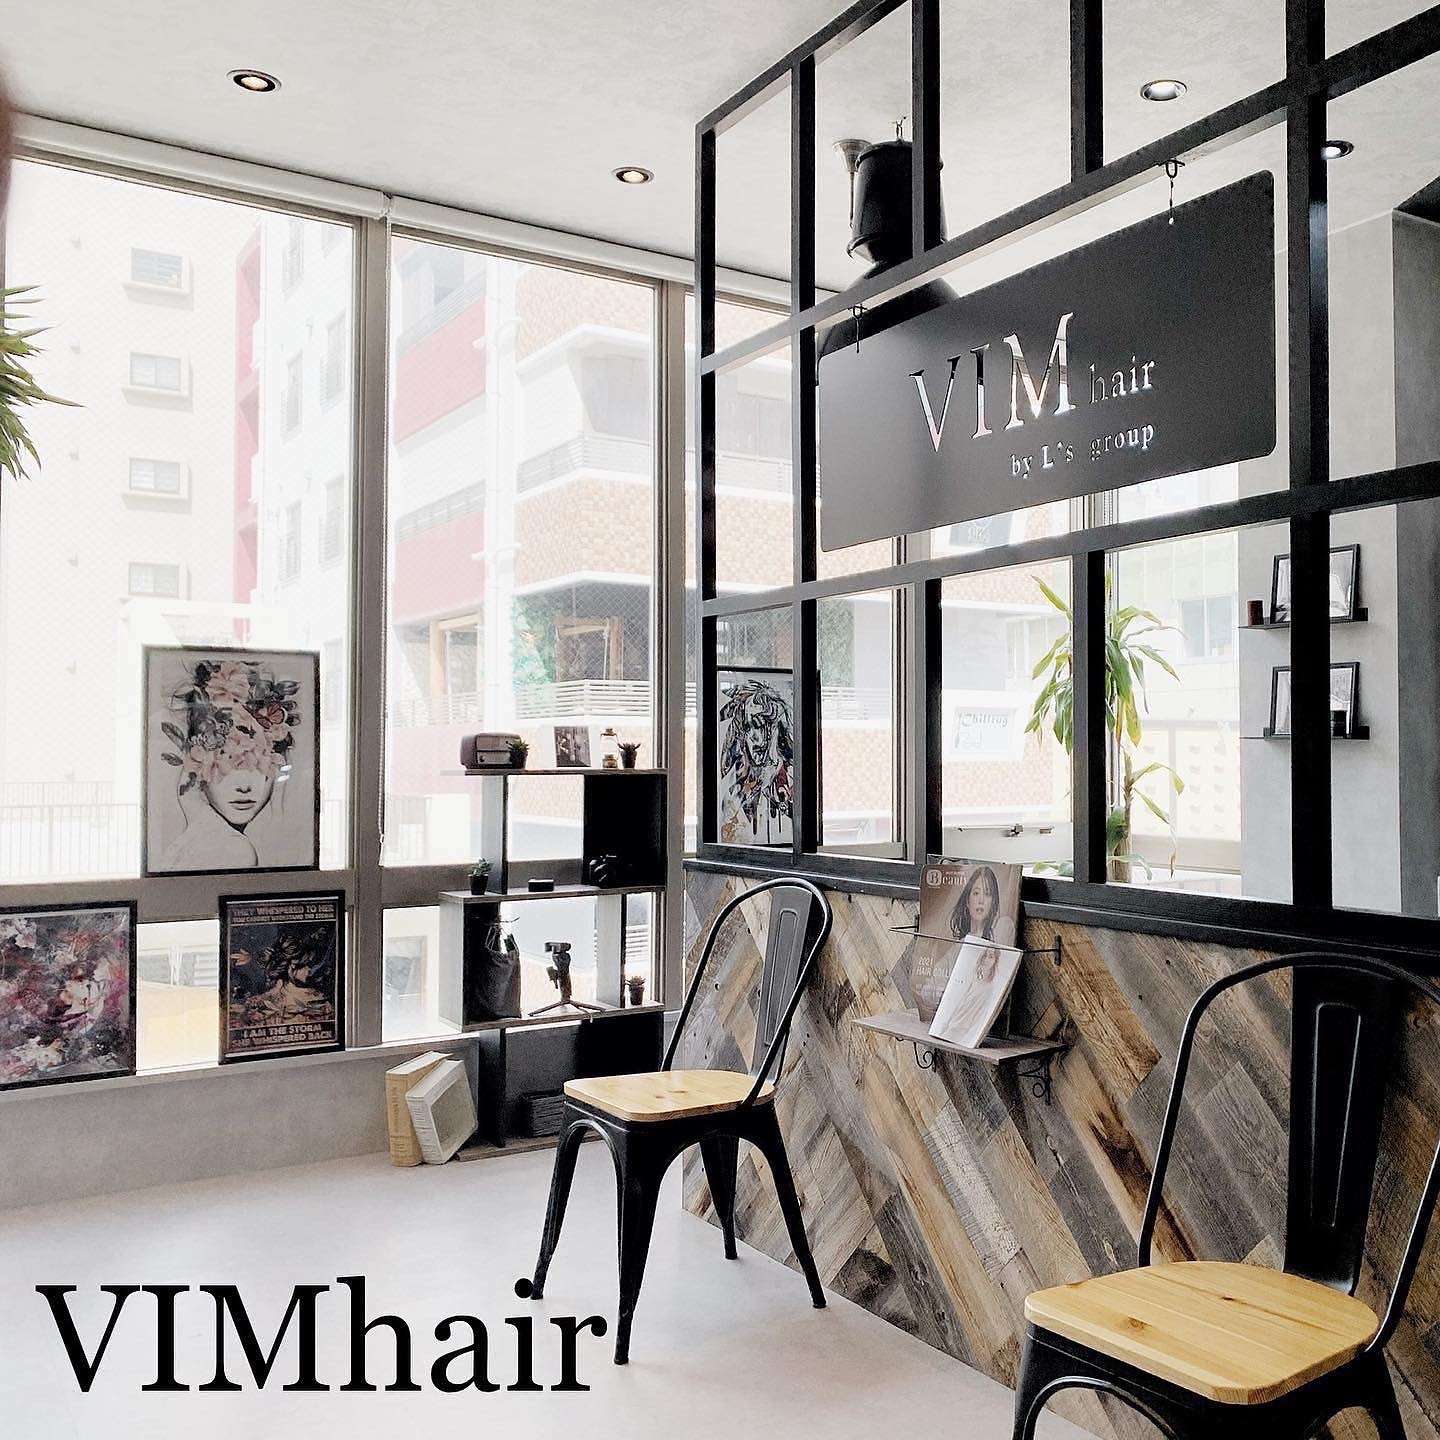 ■VIM hair おもろまち店